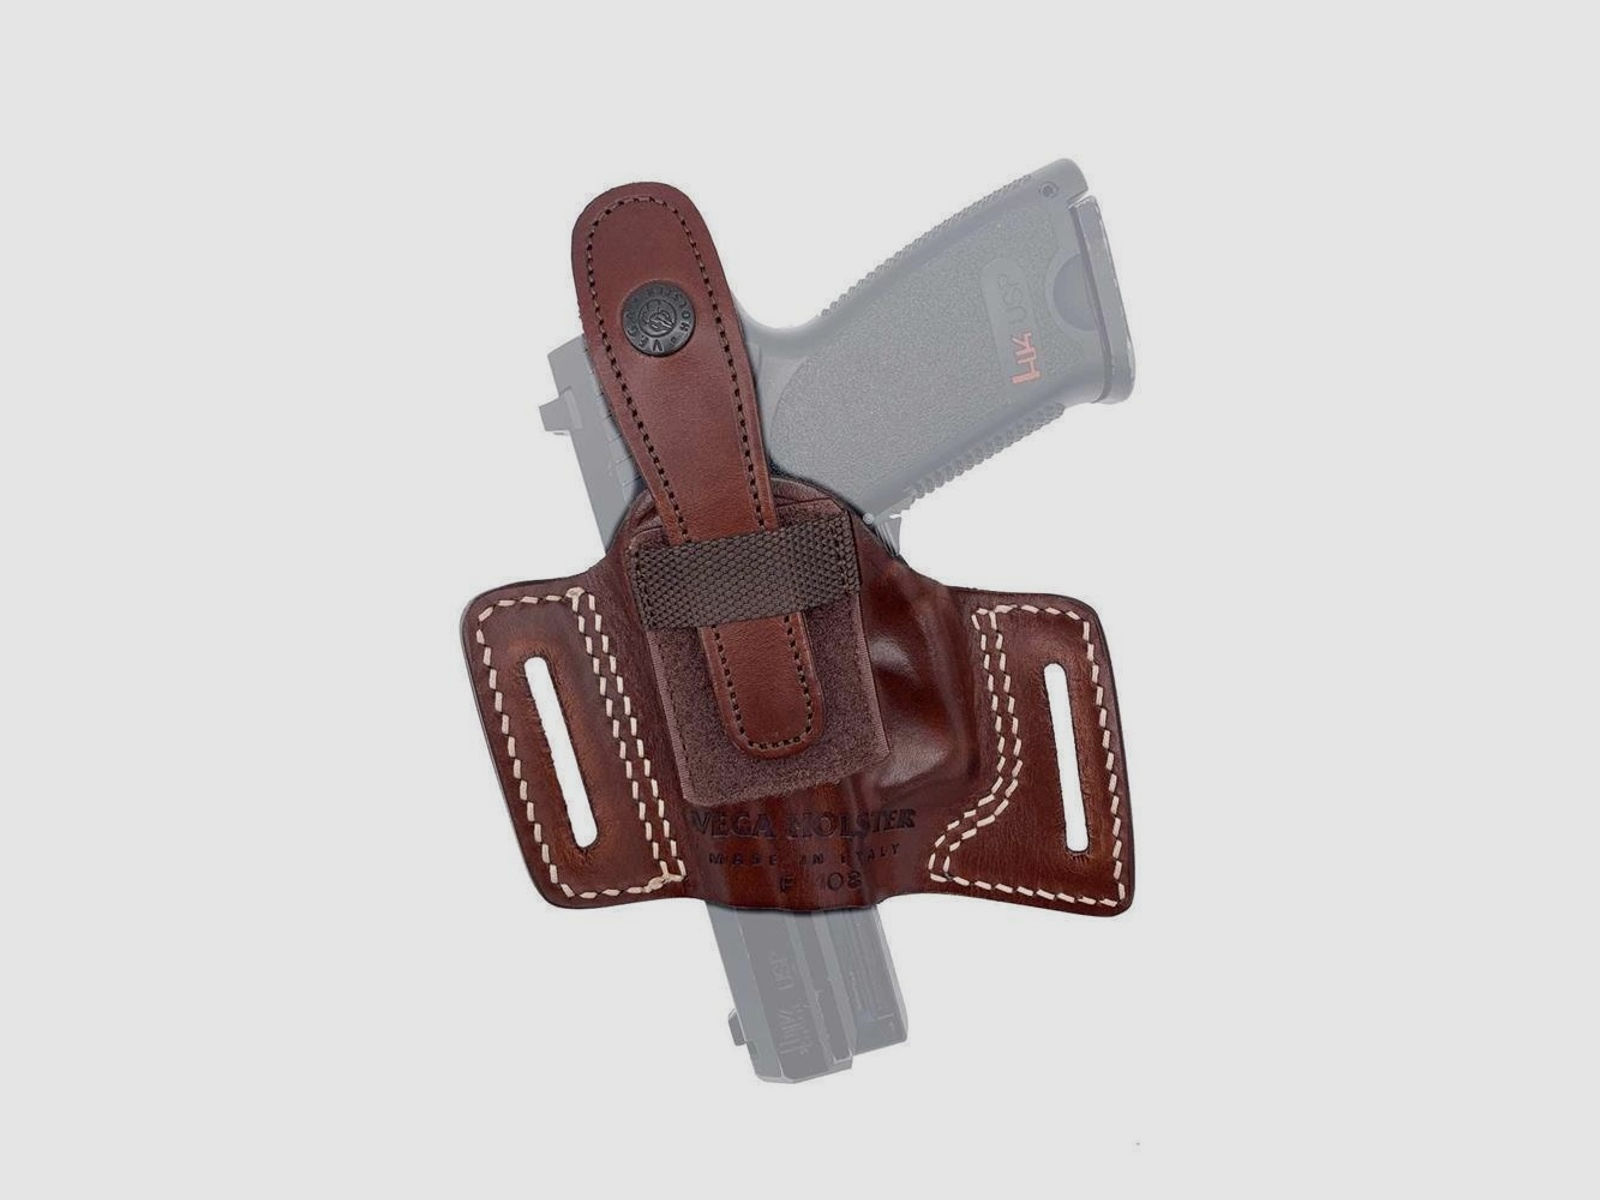 Gürtelholster mit offener Mündung & Sicherung Sig Sauer P320 Carry/Compact/M17/PRO 2022/2340, Beretta APX -Braun-Rechtshänder